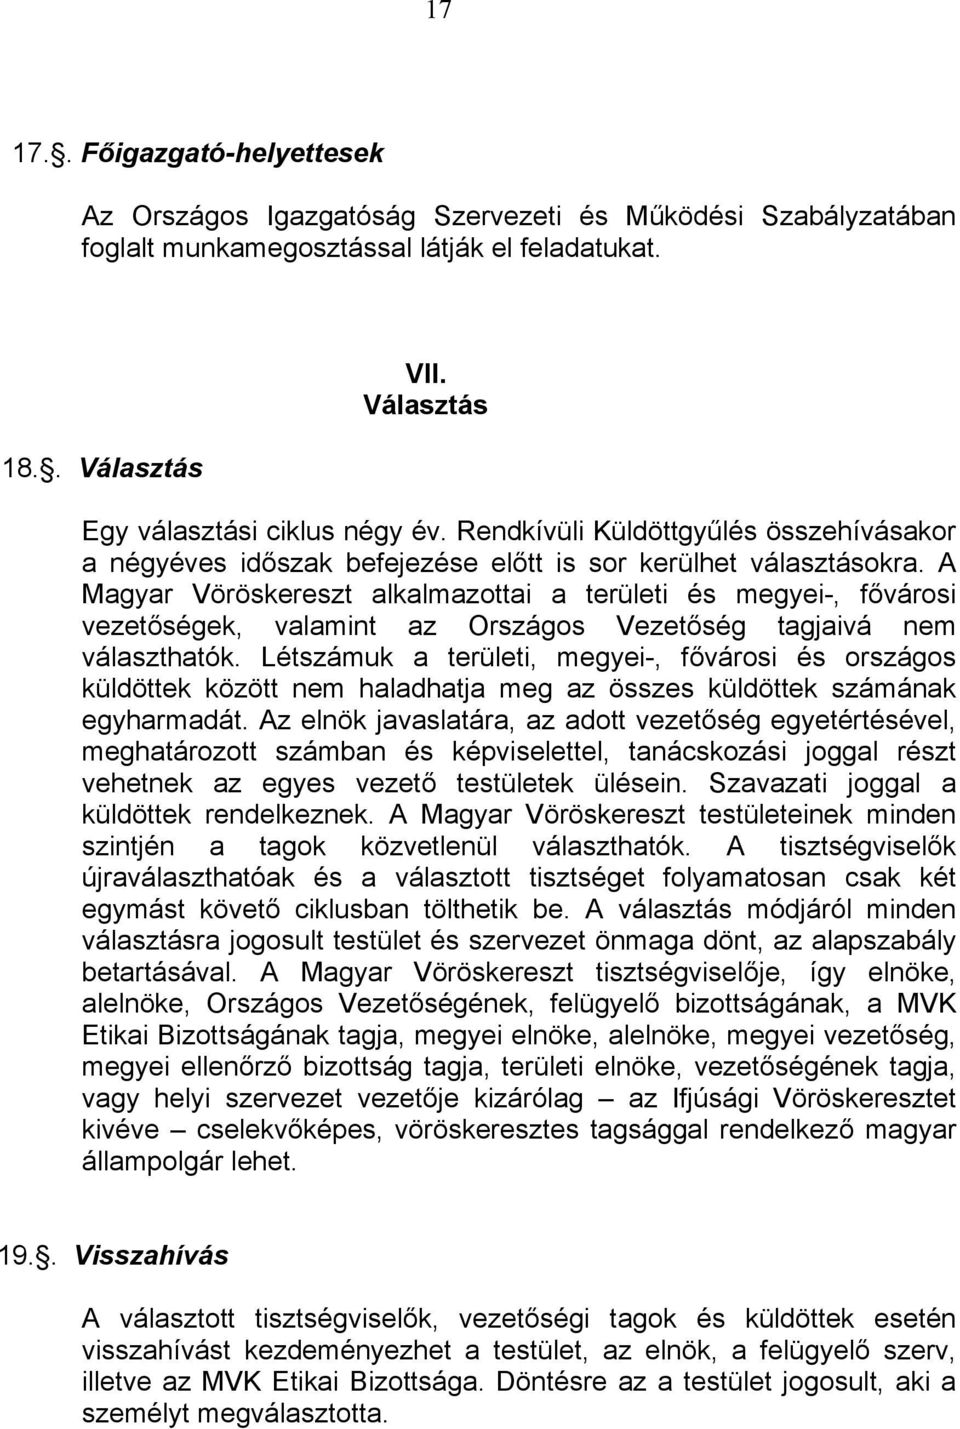 A Magyar Vöröskereszt alkalmazottai a területi és megyei-, fővárosi vezetőségek, valamint az Országos Vezetőség tagjaivá nem választhatók.